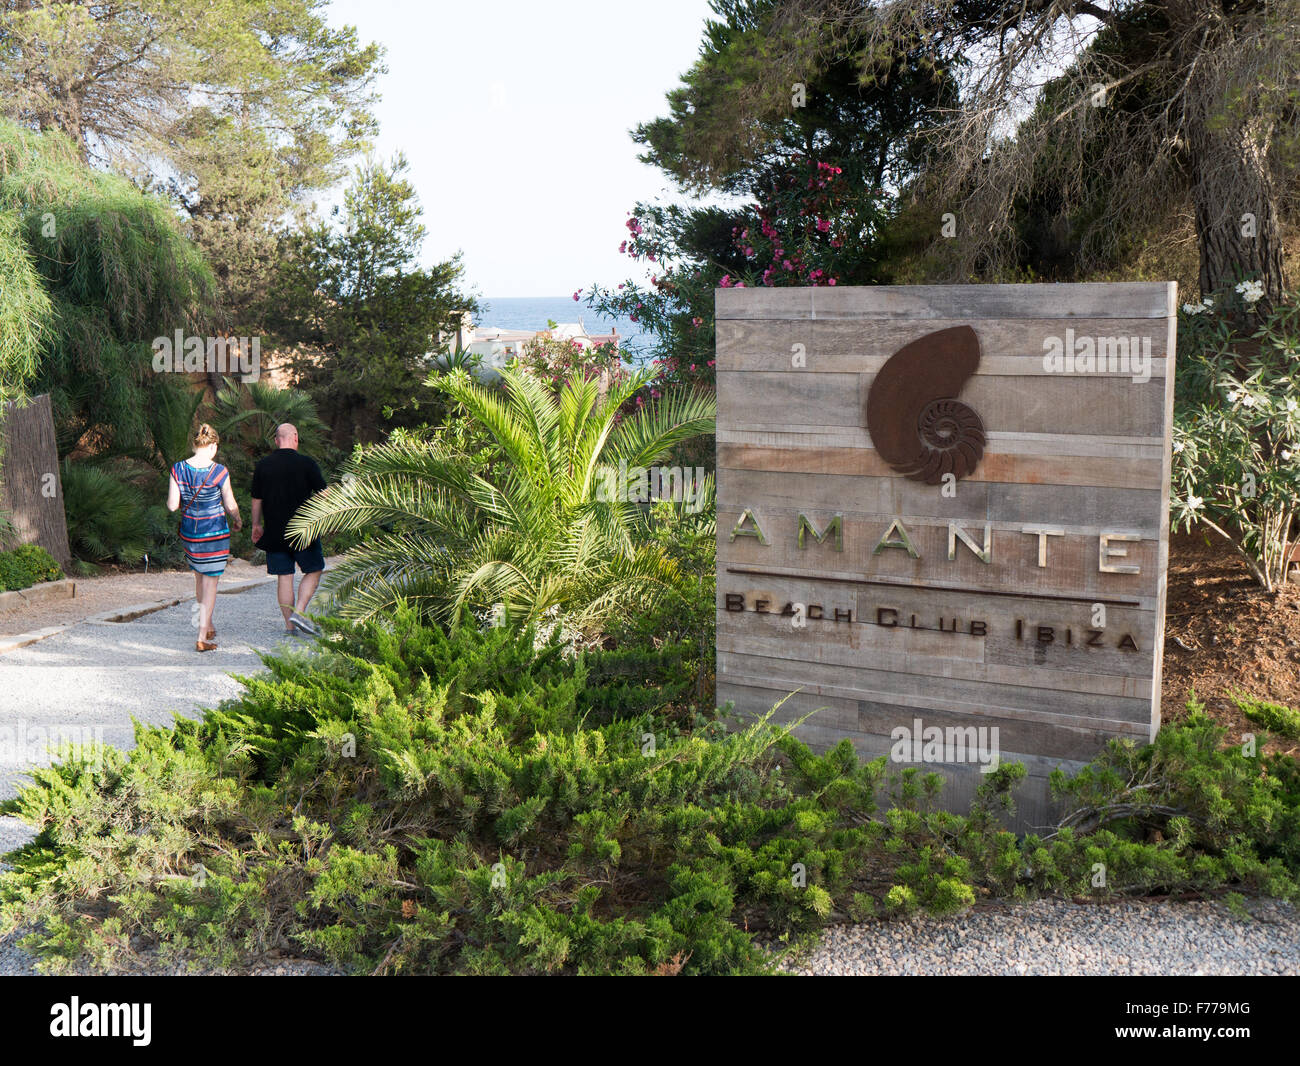 Amante Beach Club di Ibiza Foto Stock